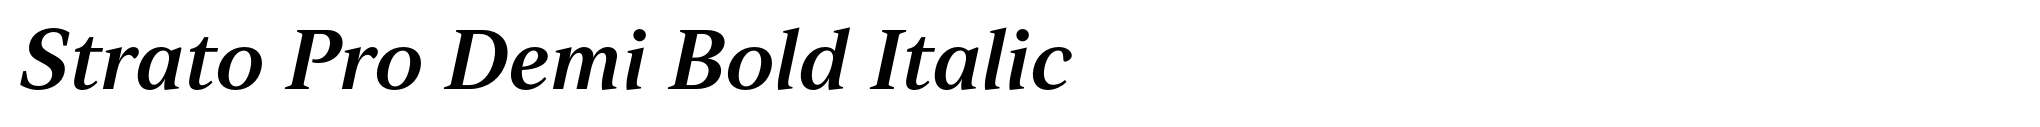 Strato Pro Demi Bold Italic image